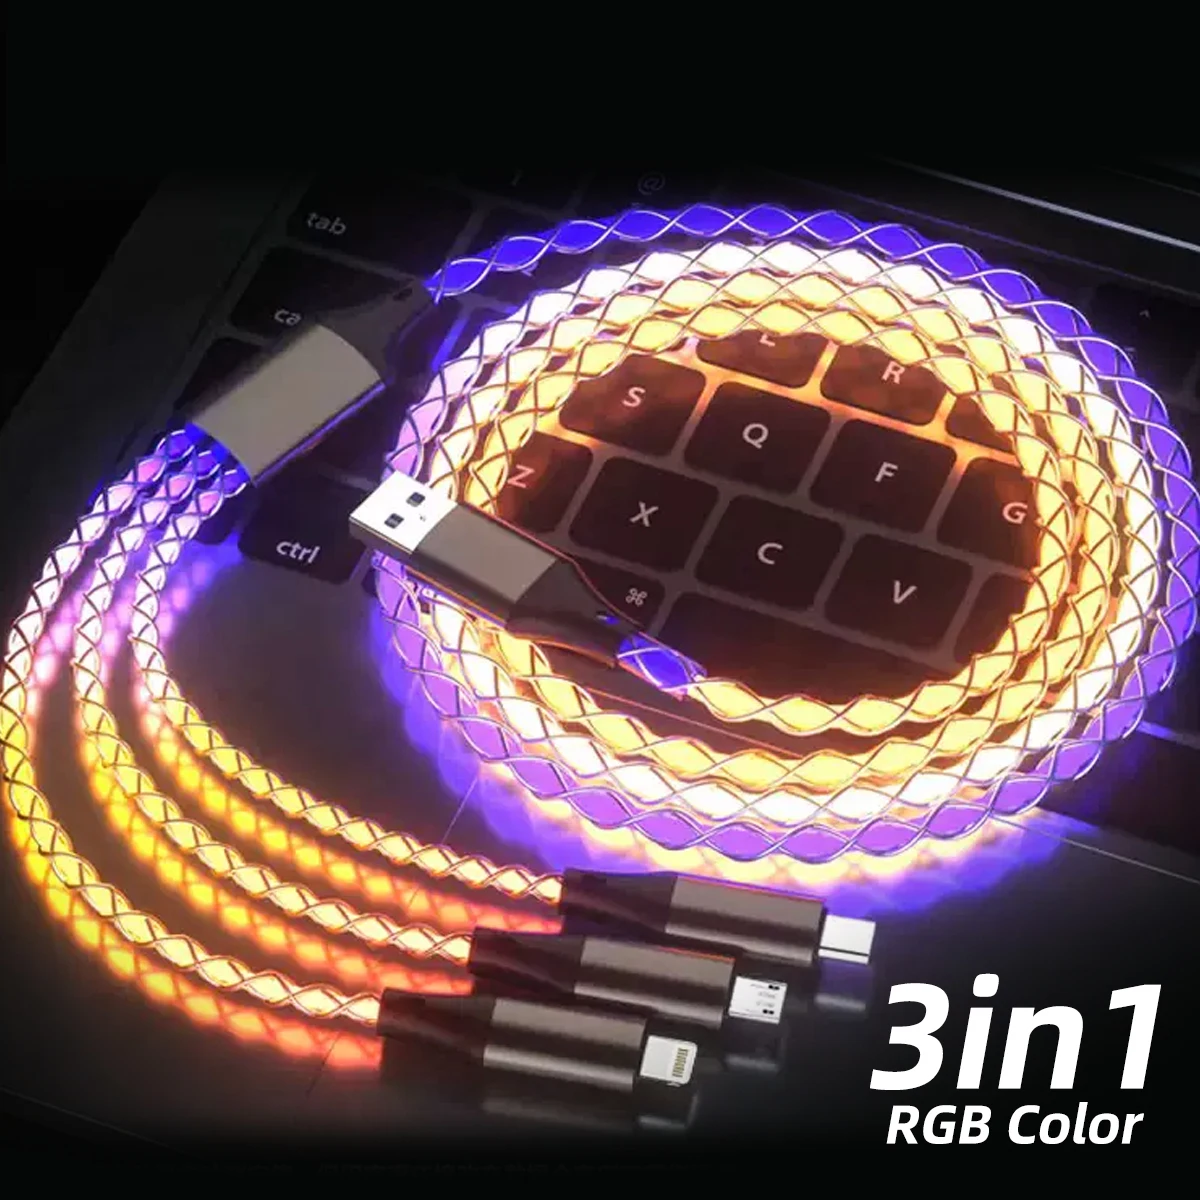 3 в 1 RGB USB Type C Микрокабель Glow Flowing 1,2 М Кабель Для Быстрой Зарядки USB Micro Charger светодиодный Провод для iPhone Samsung Huawei